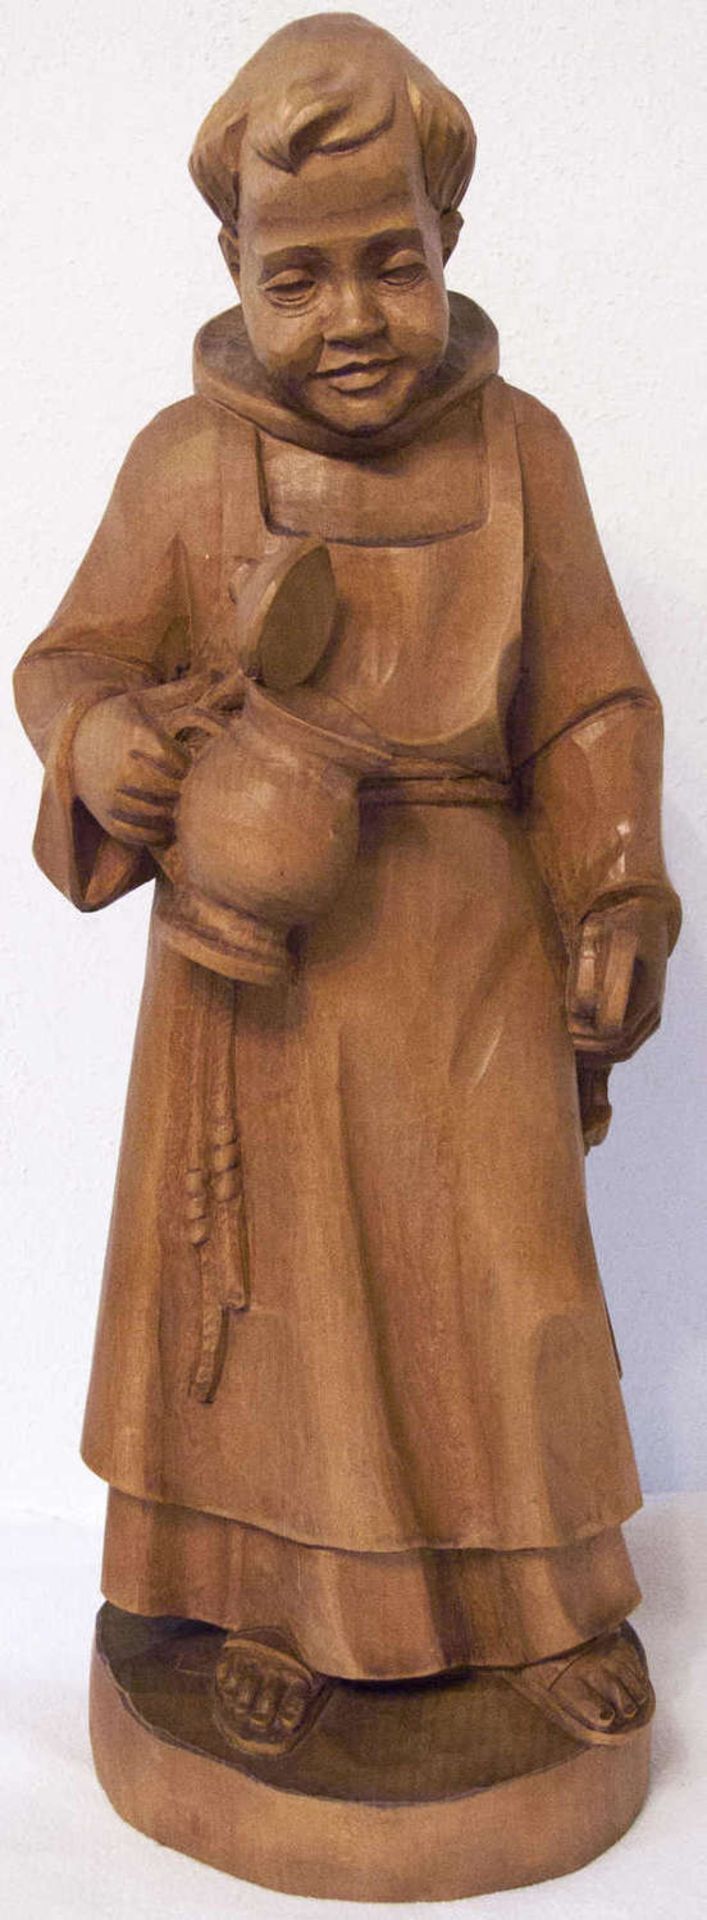 Holz - Skulptur "Mönch". Massiv - Holz, handgeschnitzt. Höhe: ca. 46 cm. Sehr guter Zustand.Wood -